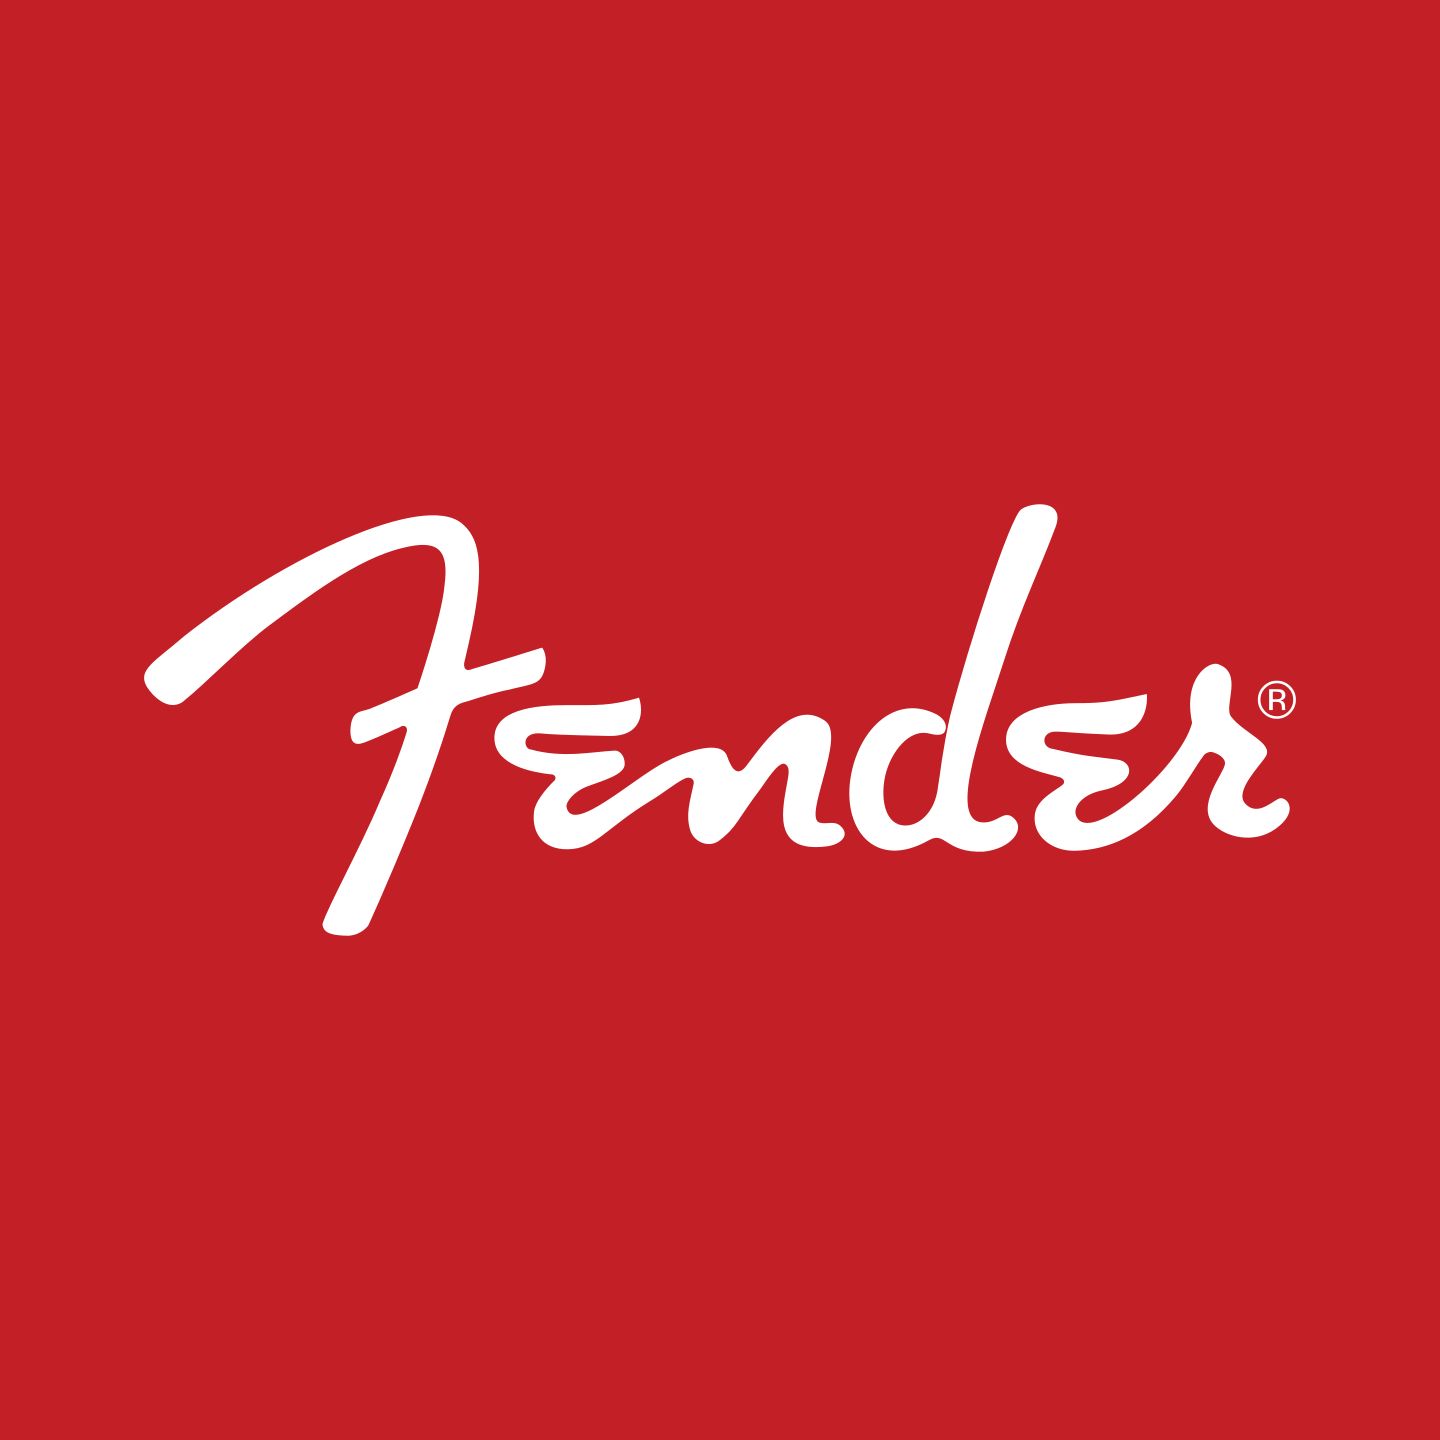 Fender Logo.